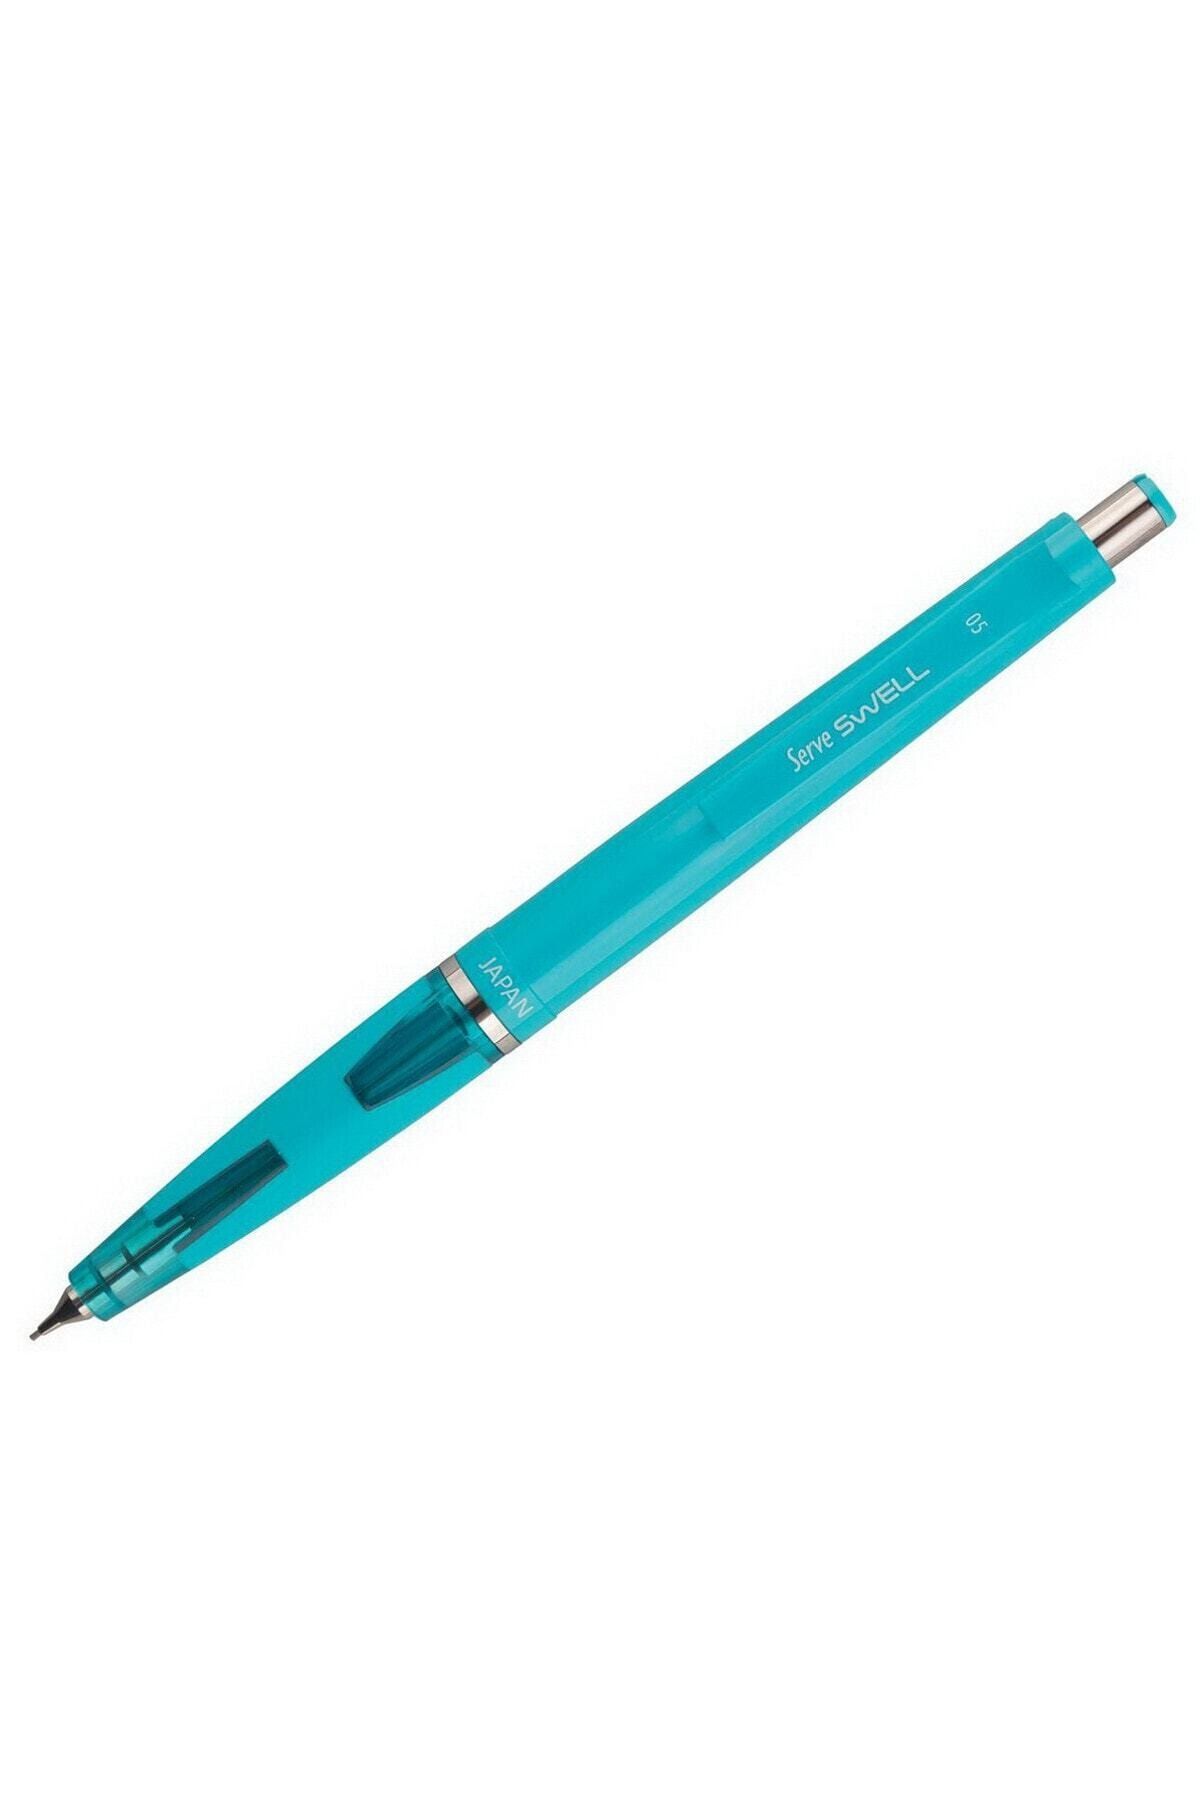 Serve Swell Mekanik Kurşun Kalem 0.5 Mm Fosforlu Mavi